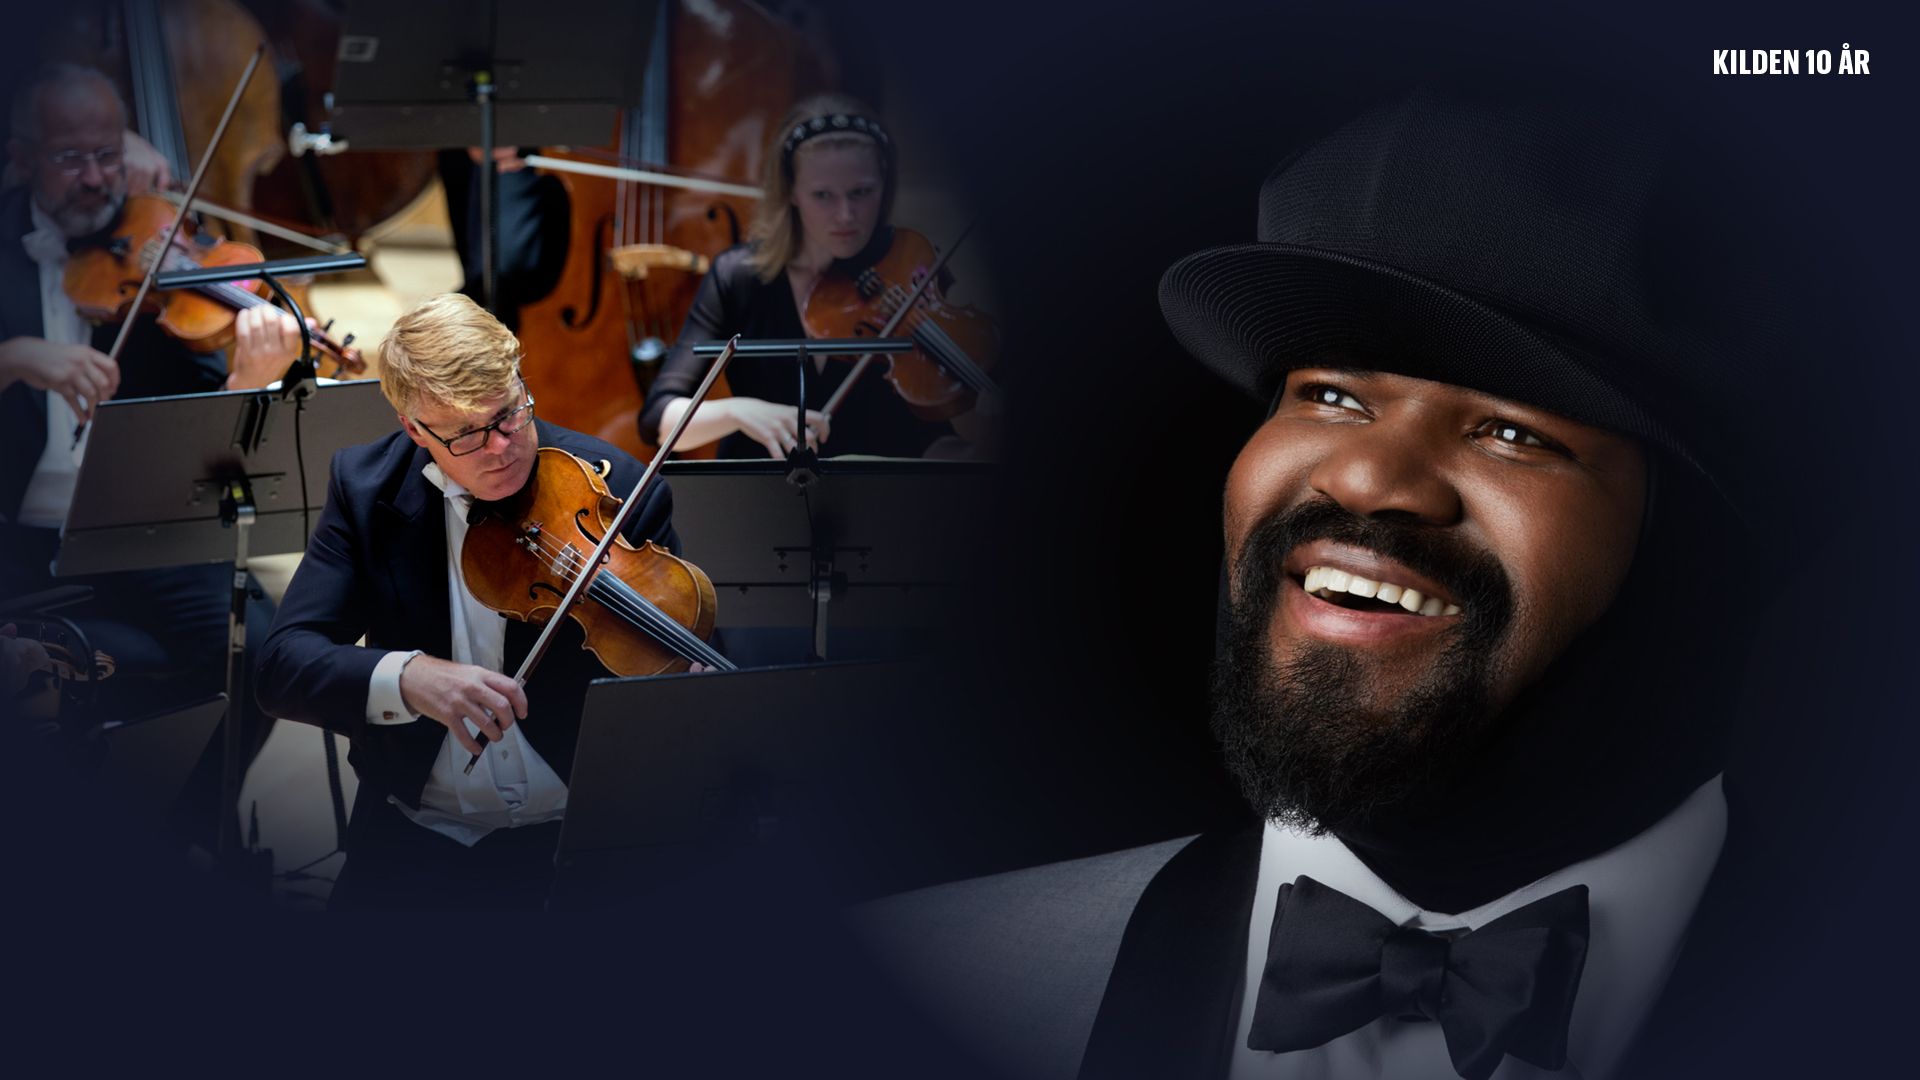 Collage av to bilder: Musikere i et symfoniorkester spiller på sine instrumenter. Til høyre er det et portrettbilde av mann med mørk hud, kledd i mørkegraå jakke, vhit skjorte og tversoversløyfe. På hodet har han en sort cap. Han smiler.